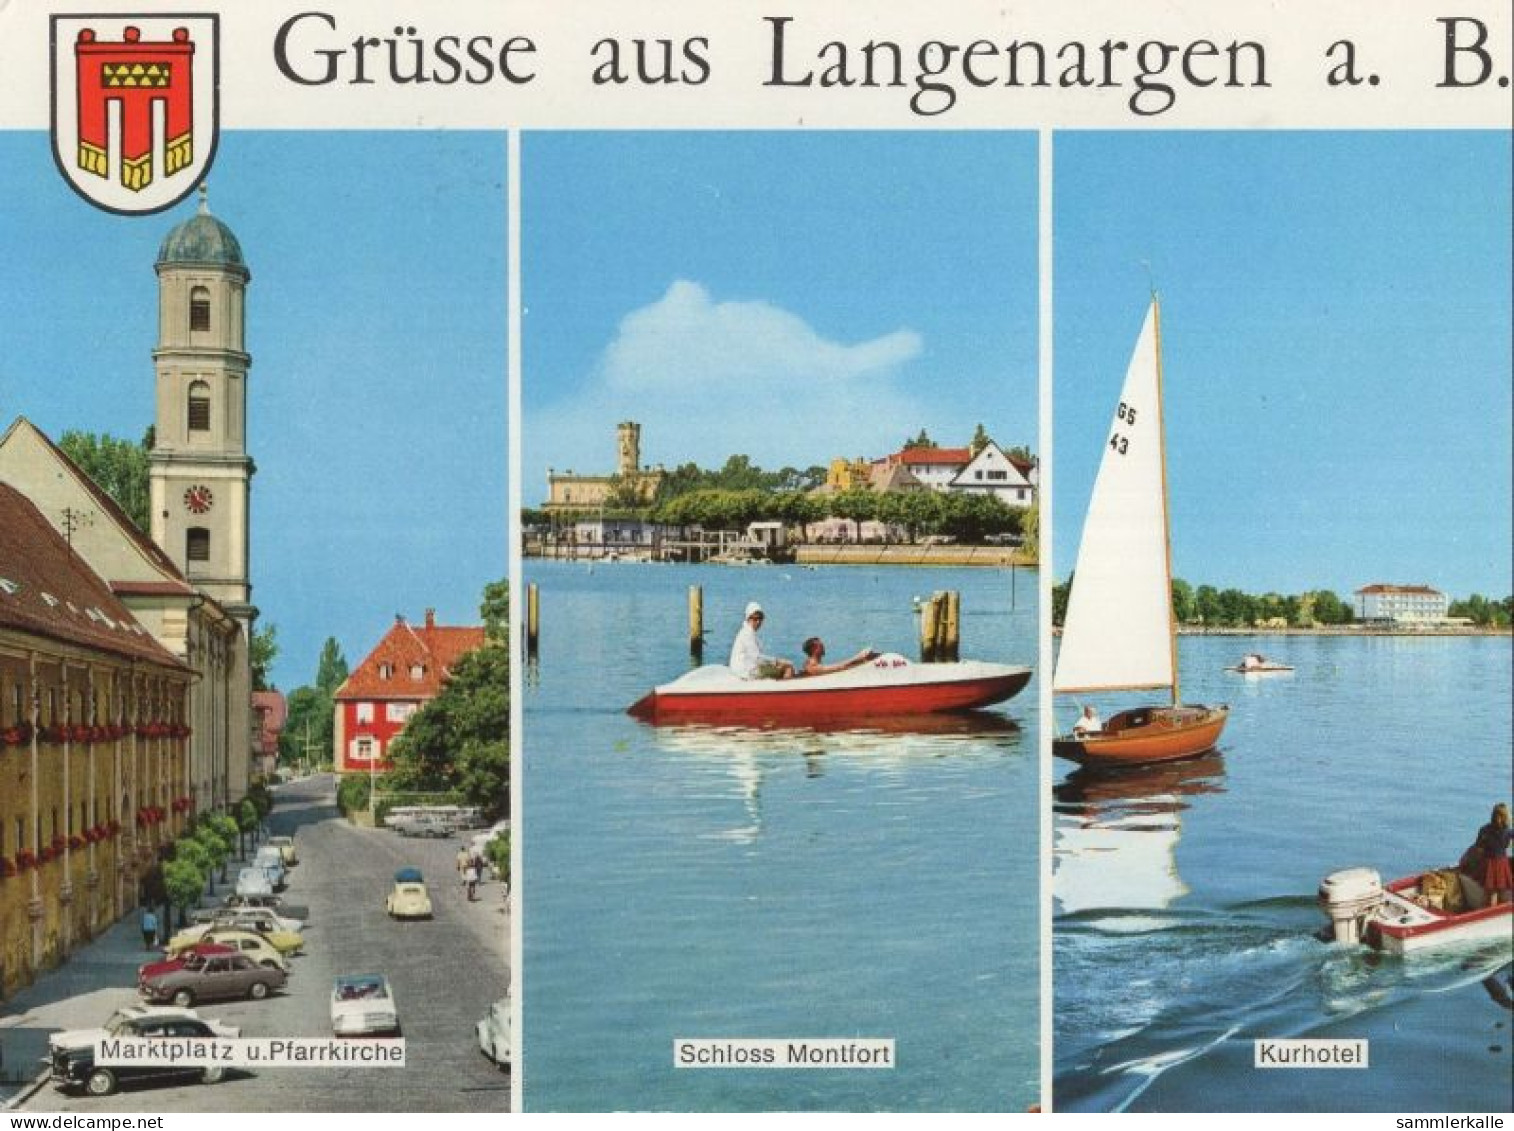 127903 - Langenargen - 3 Bilder - Langenargen